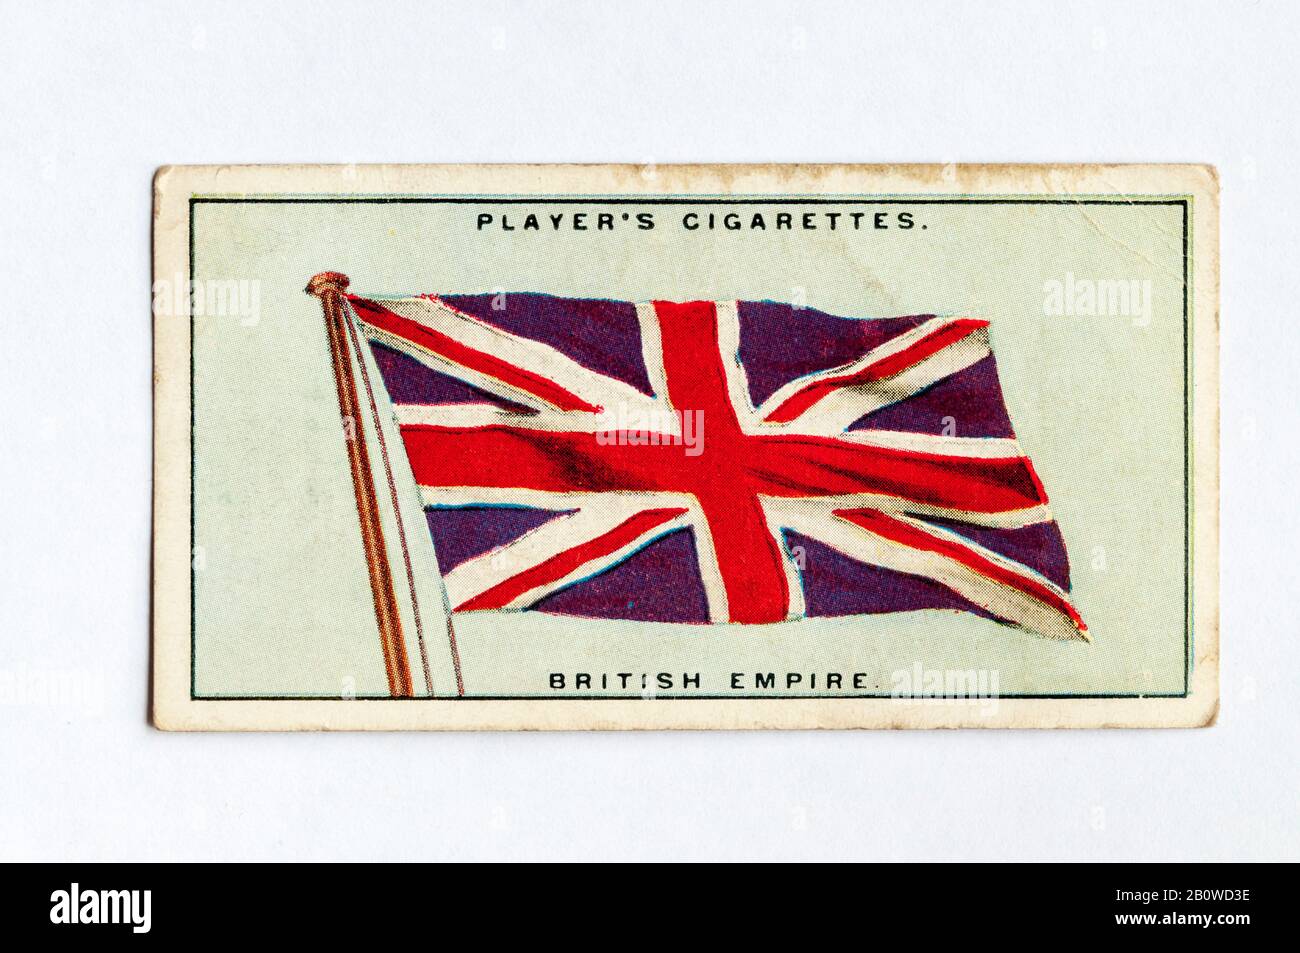 La carte à cigarettes du joueur dans la série Flags of the League of Nations montre le drapeau de l'Empire britannique, généralement connu sous le nom de Union Jack. Publié En 1928. Banque D'Images